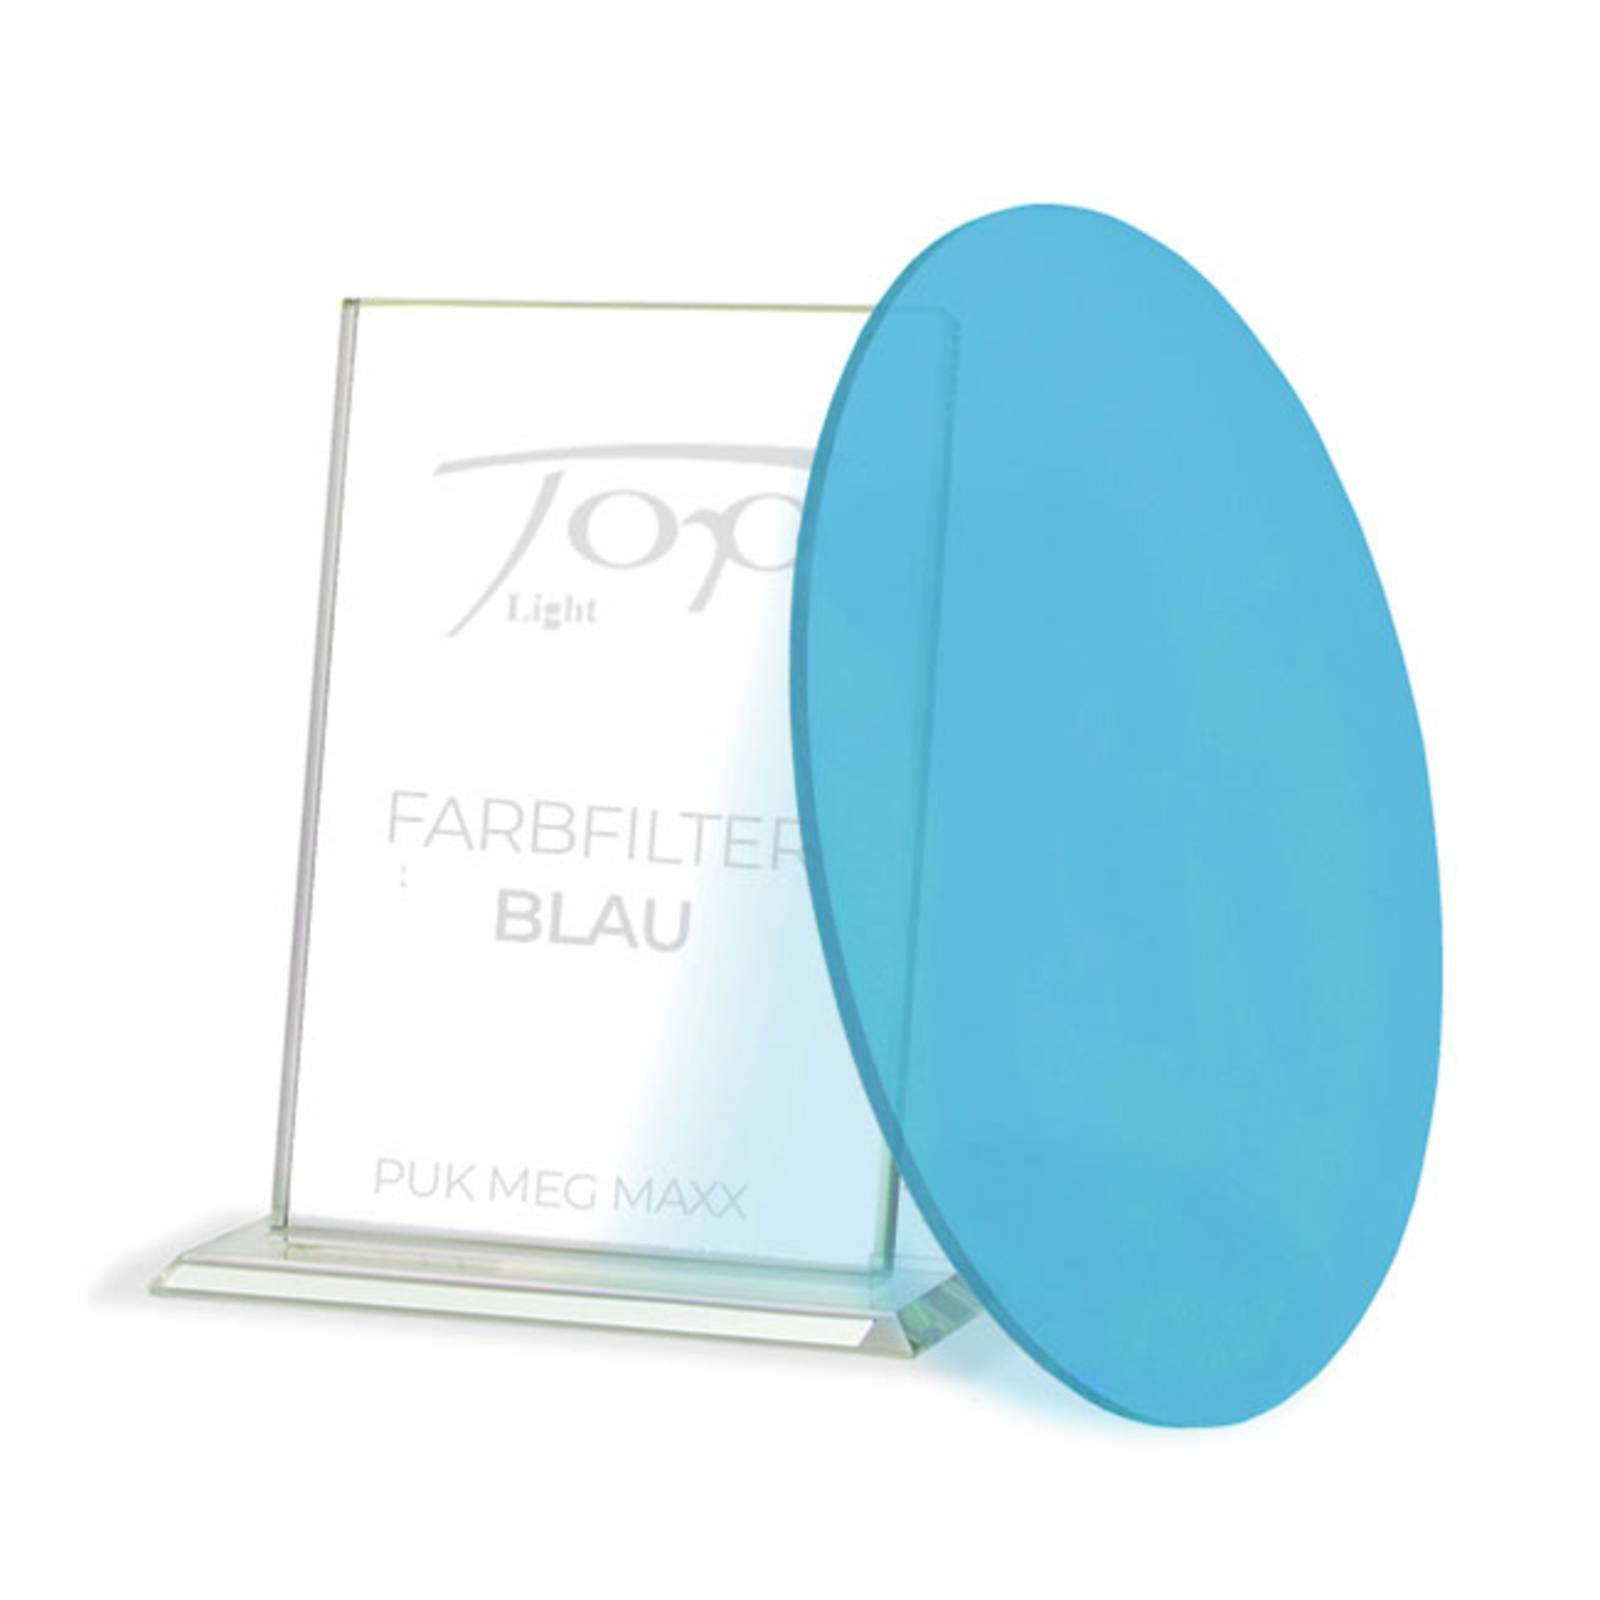 Top Light Filtro colore per la serie di apparecchi Puk Meg Maxx, blu